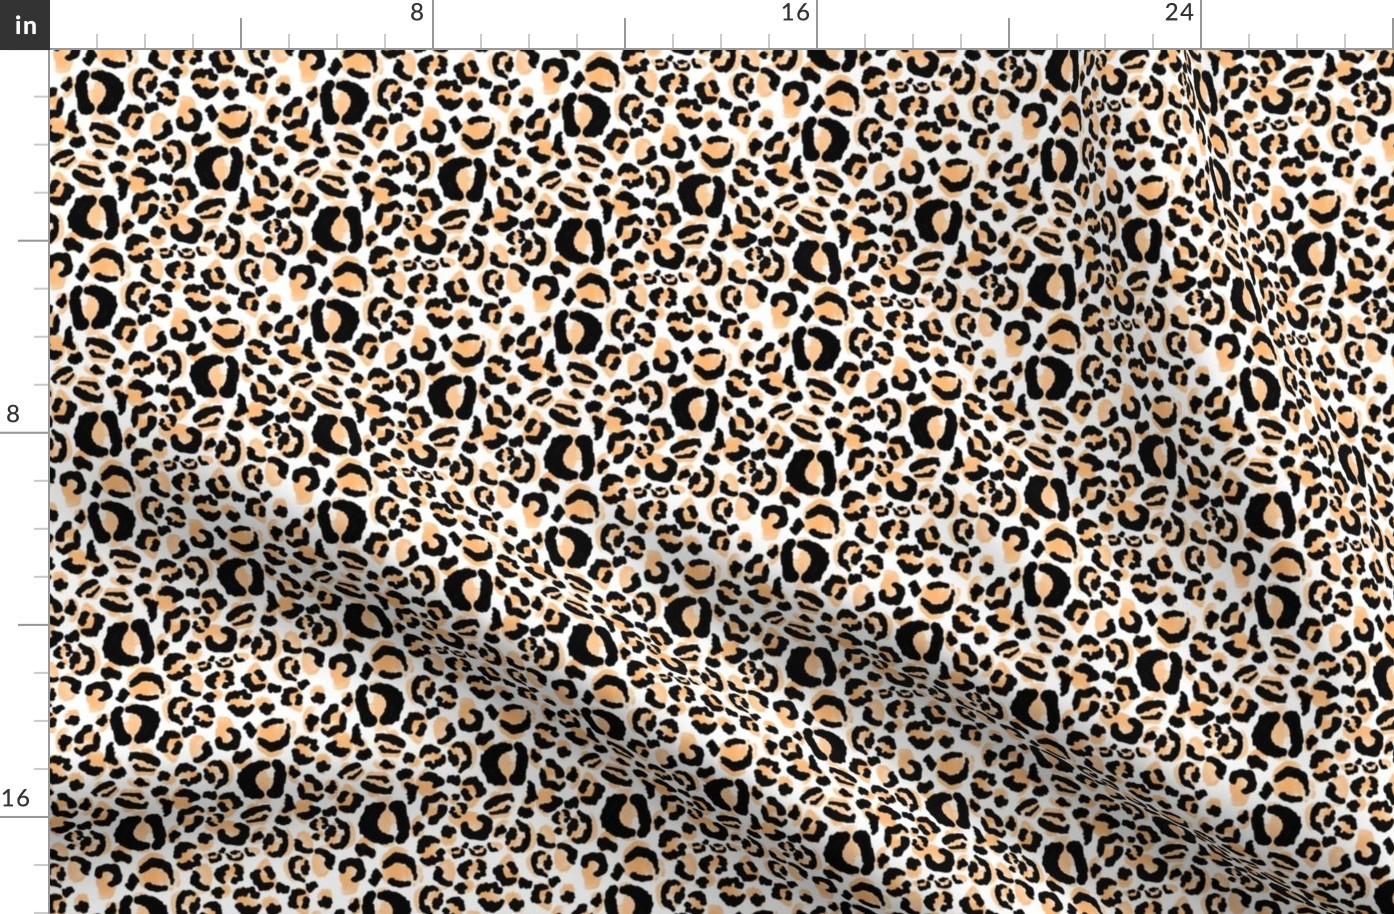 Leopard print small